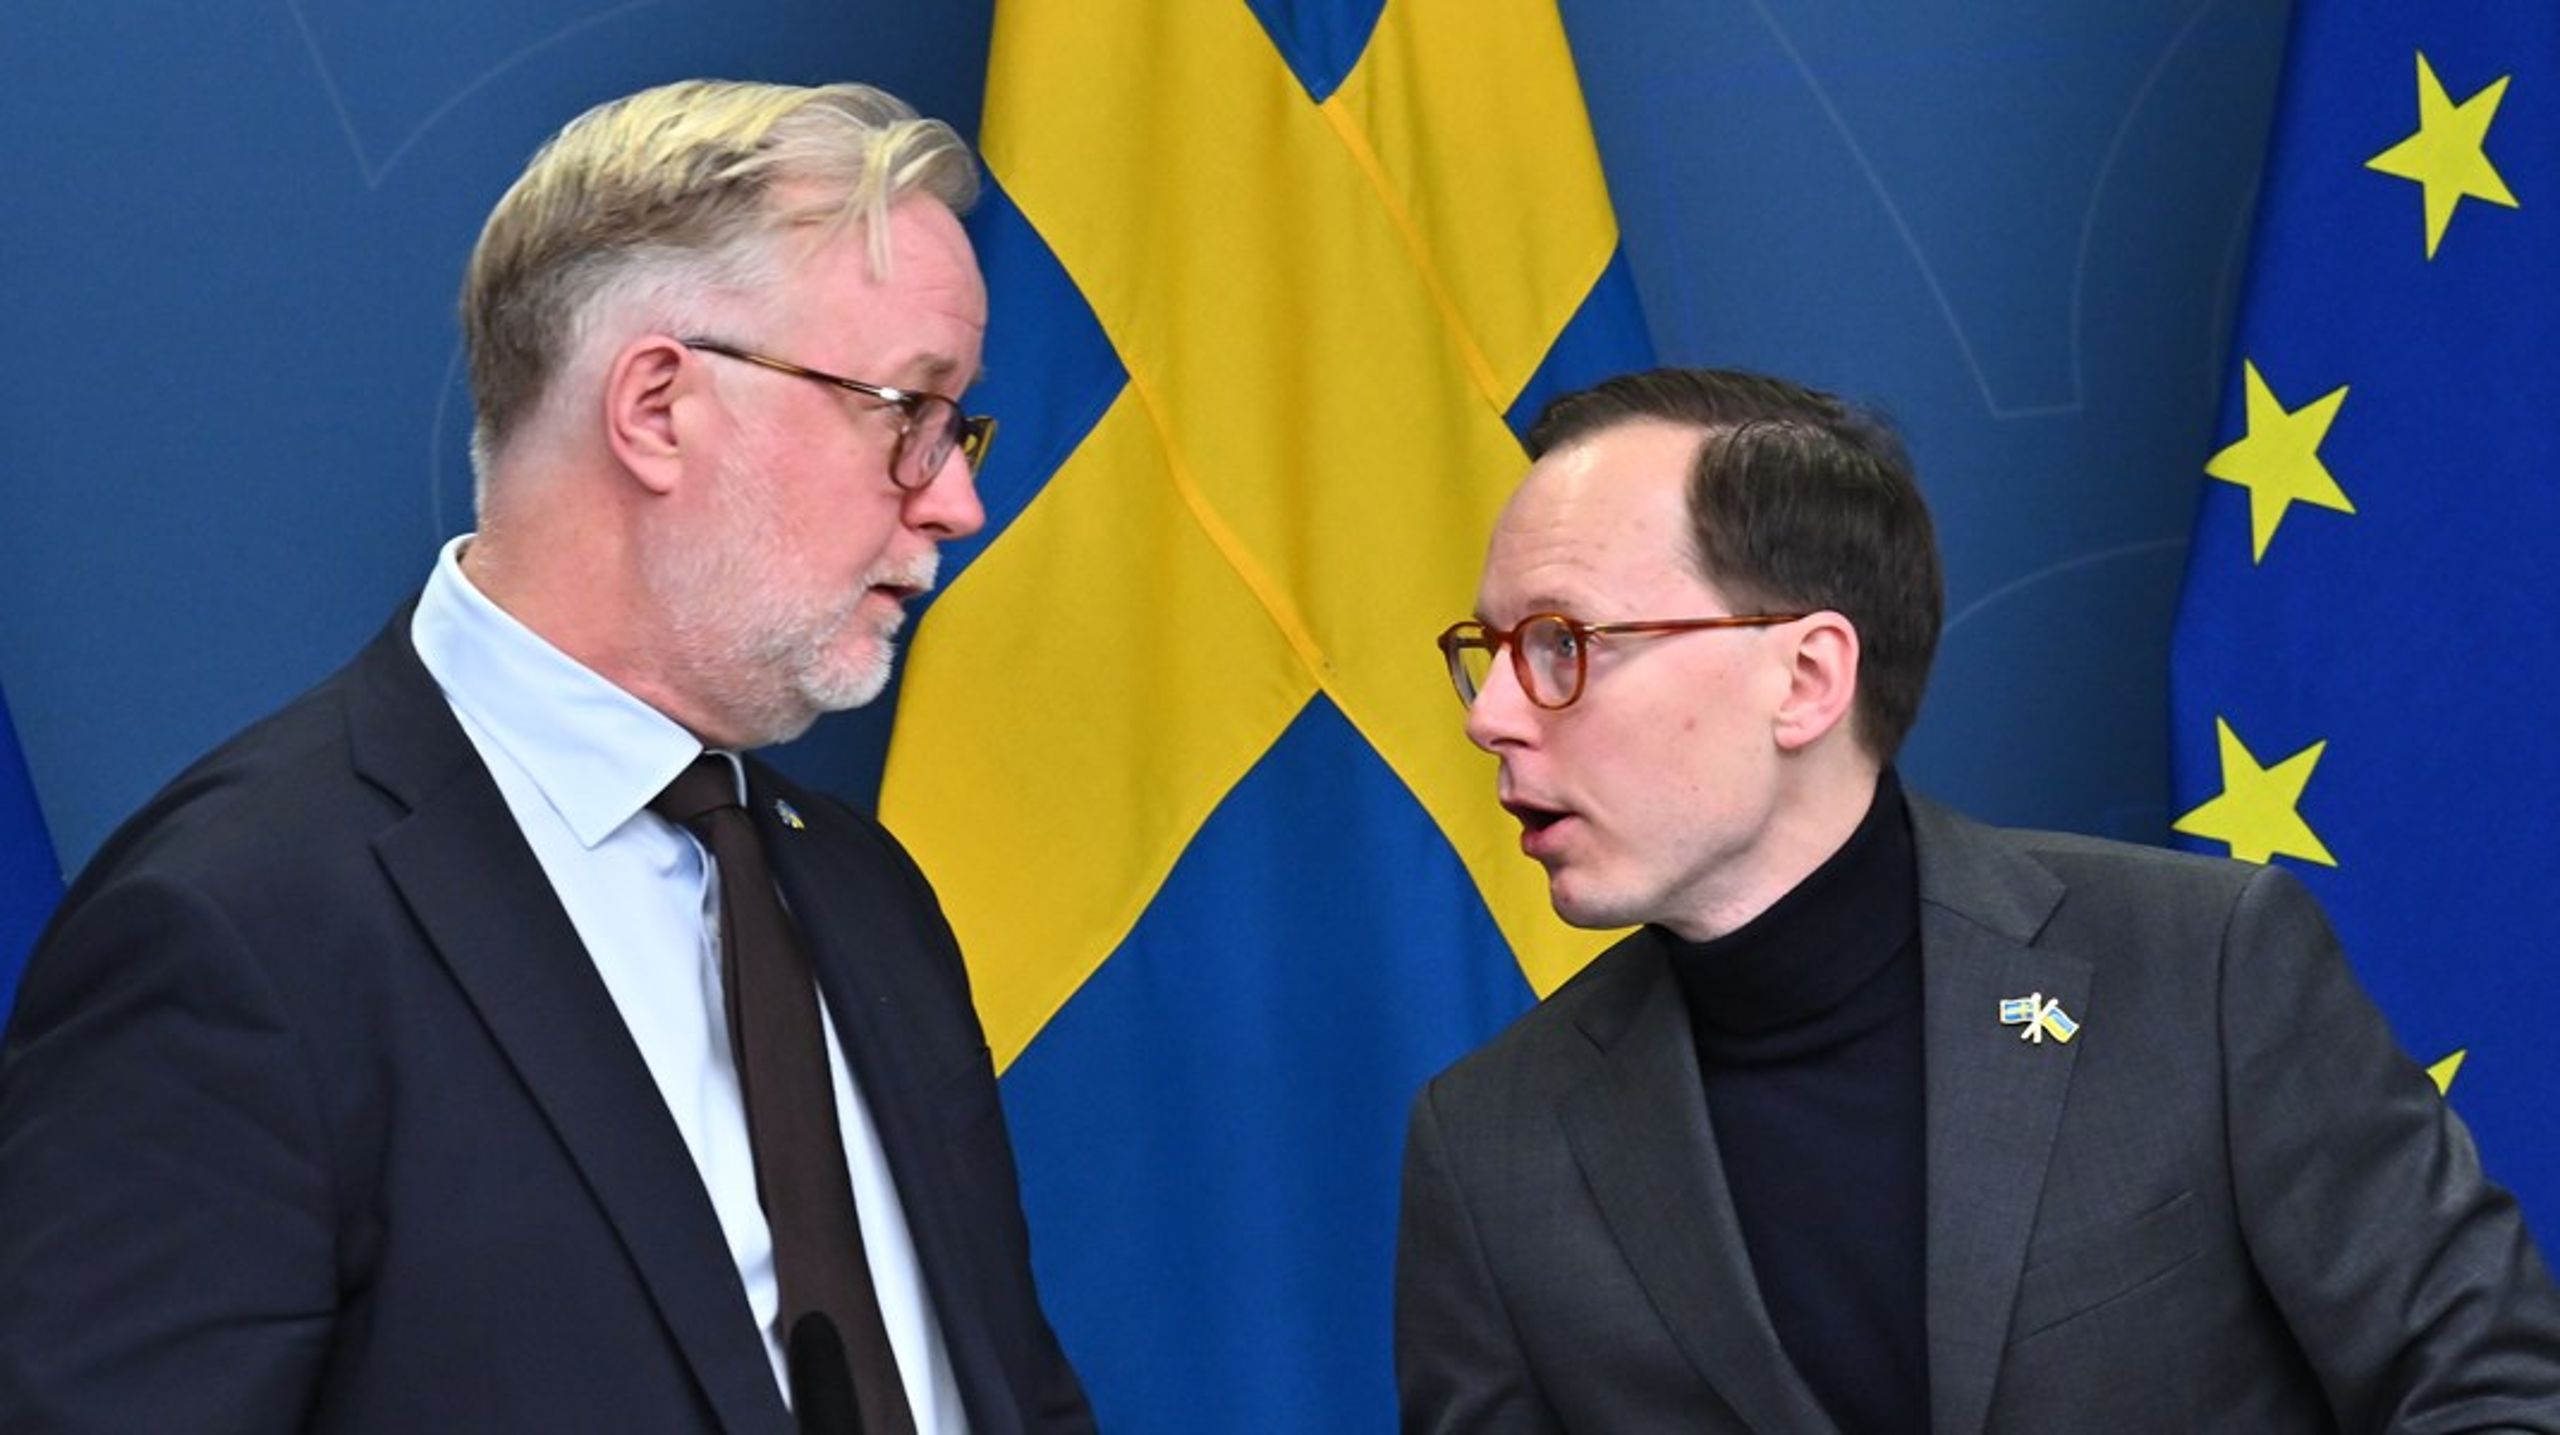 Arbetsmarknadsminister Johan Pehrson och utbildningsminister Mats Persson måste “sluta skillgissa” och fylla kompetensgapet, tycker debattören.